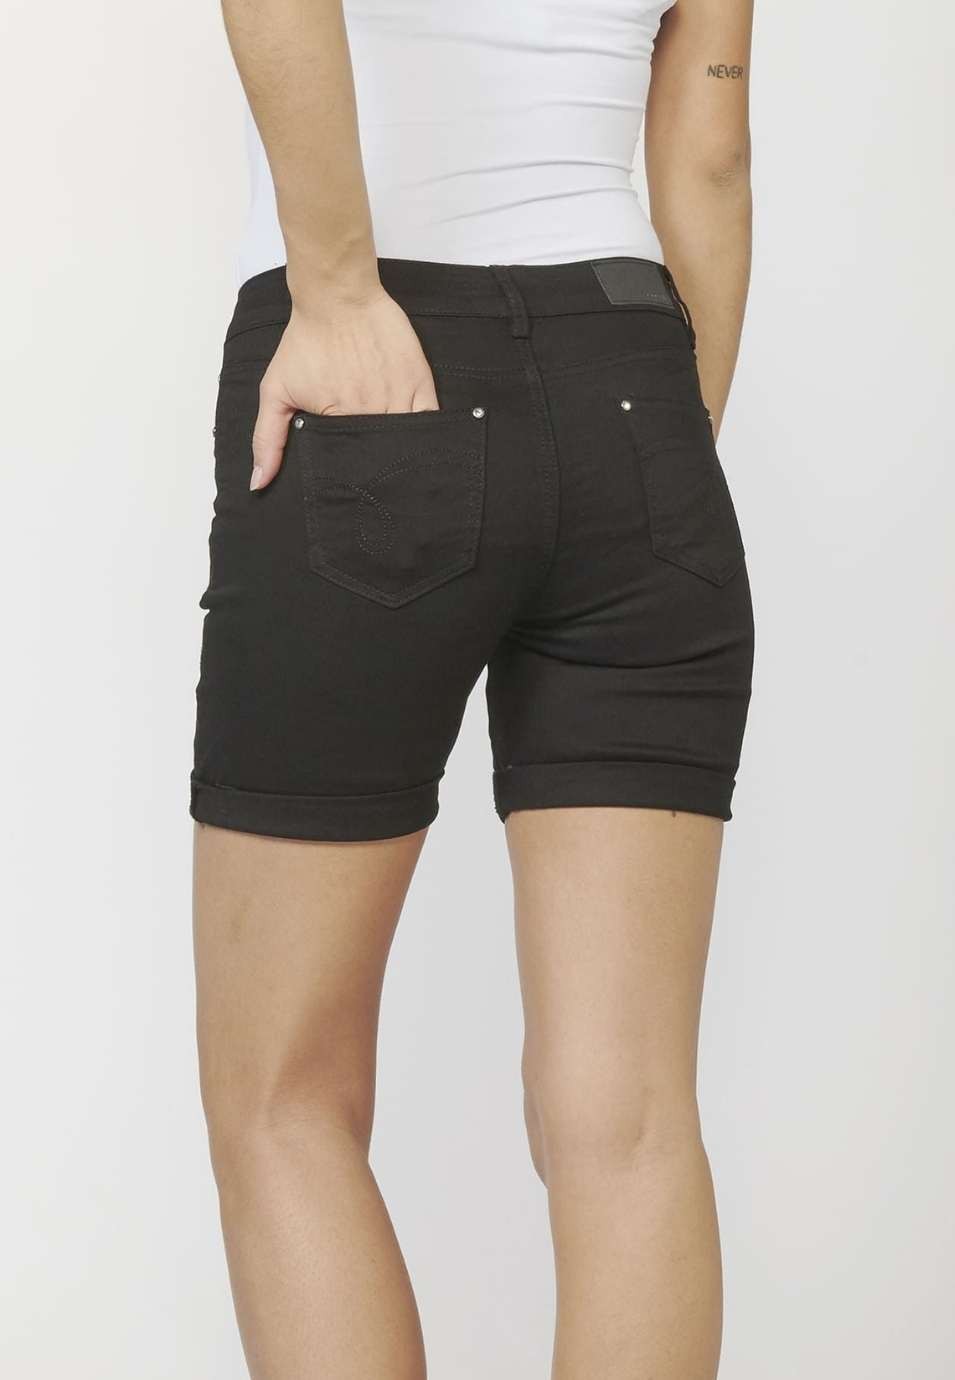 Pantalón corto Short con Cinco Bolsillos y Bordados Florales 100% Algodón para Mujer color Negro 2